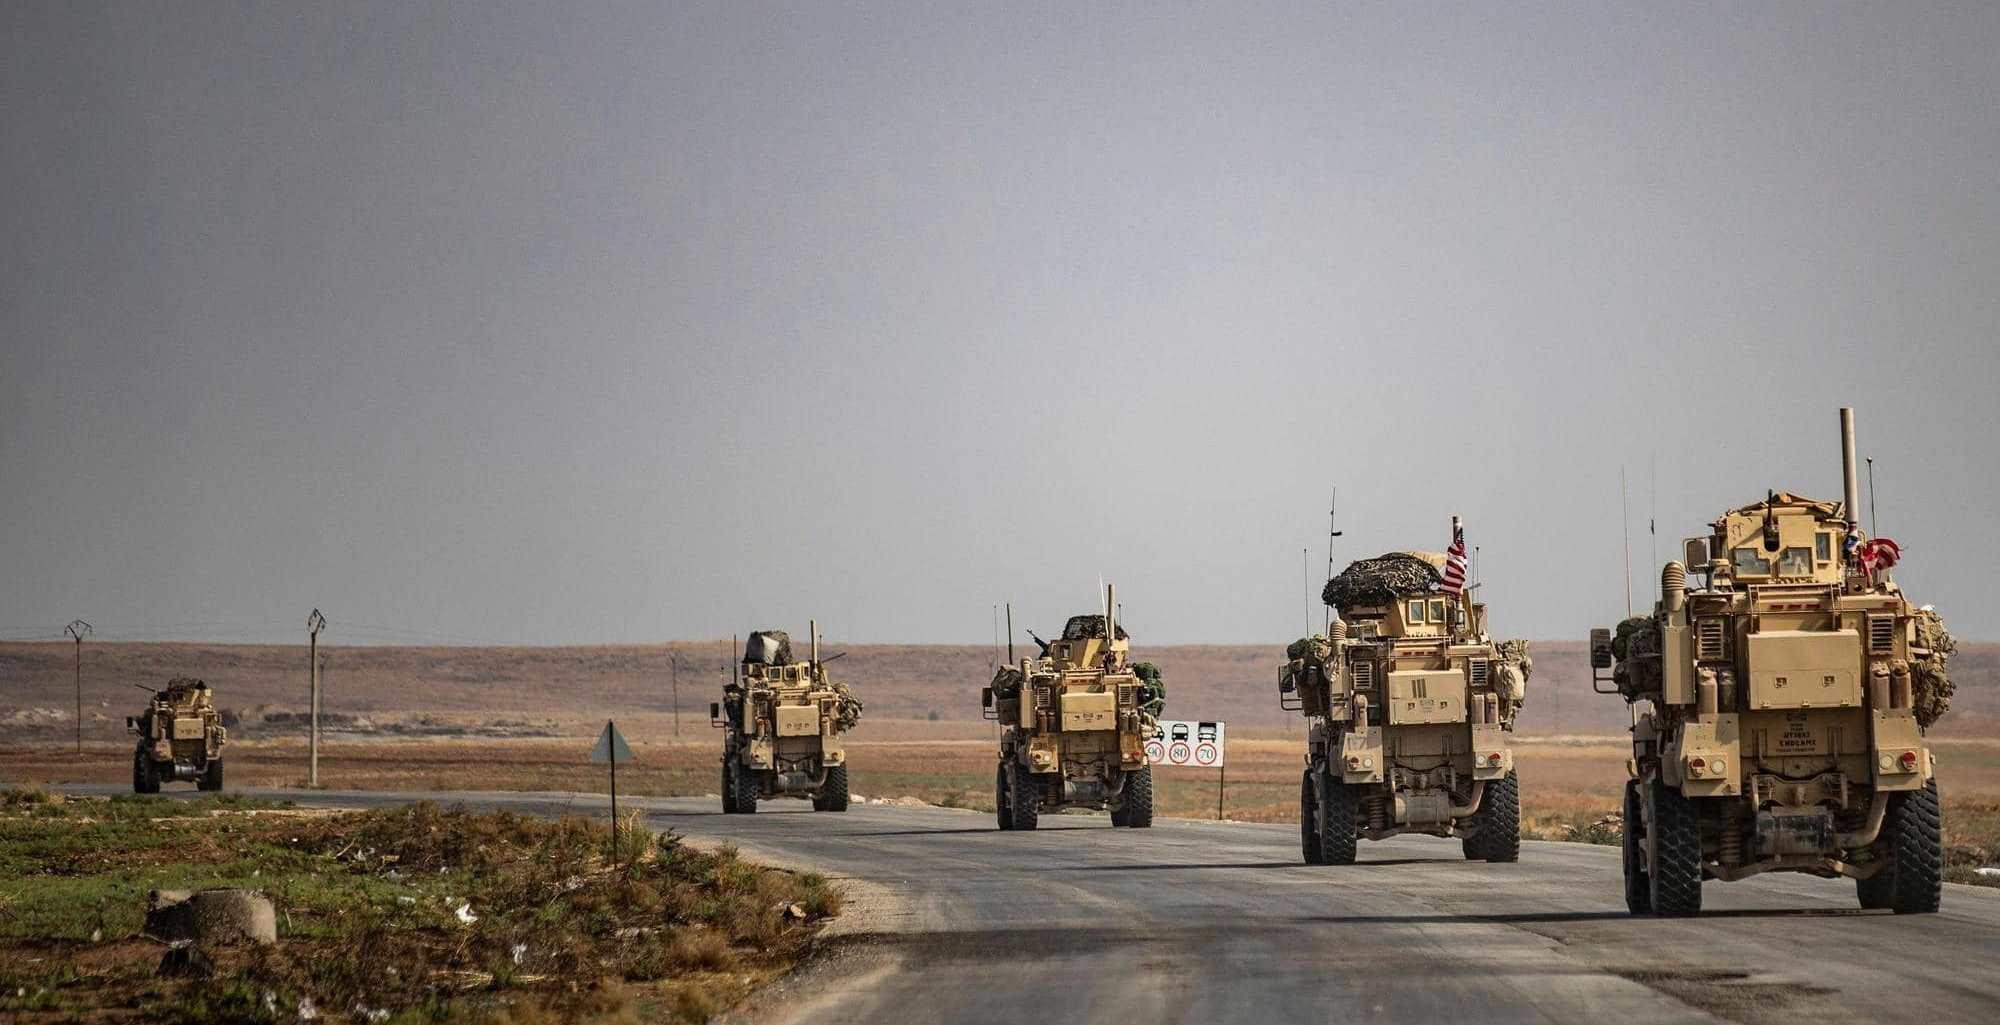 عشرات الآليات العسكرية تركت مواقعها في سوريا